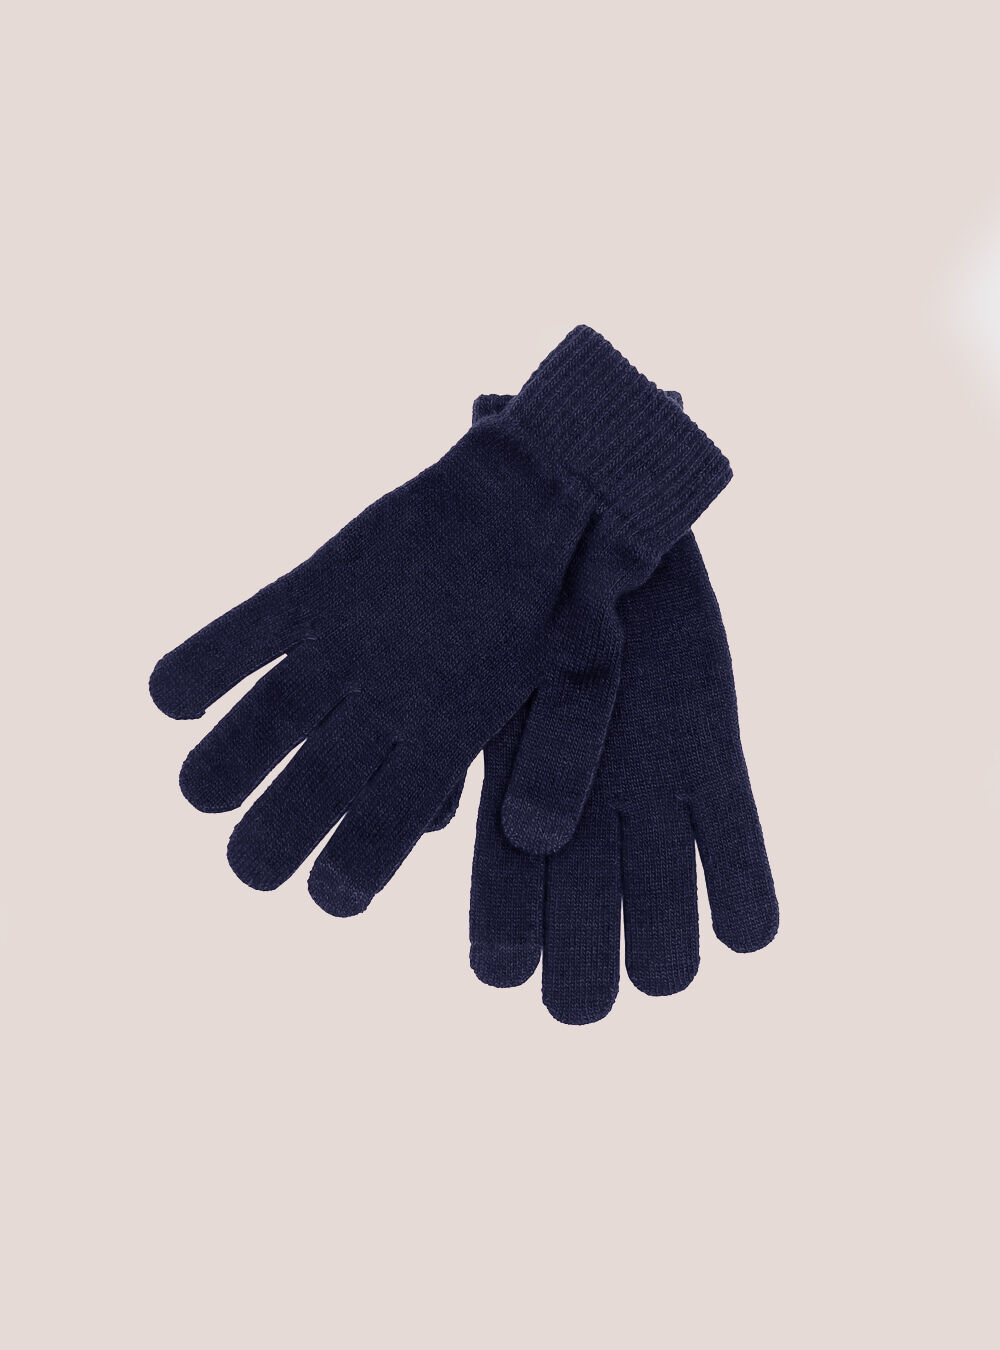 Handschuhe C210 Blue Navy Alcott Preis Guanti Touch Screen Männer – 1